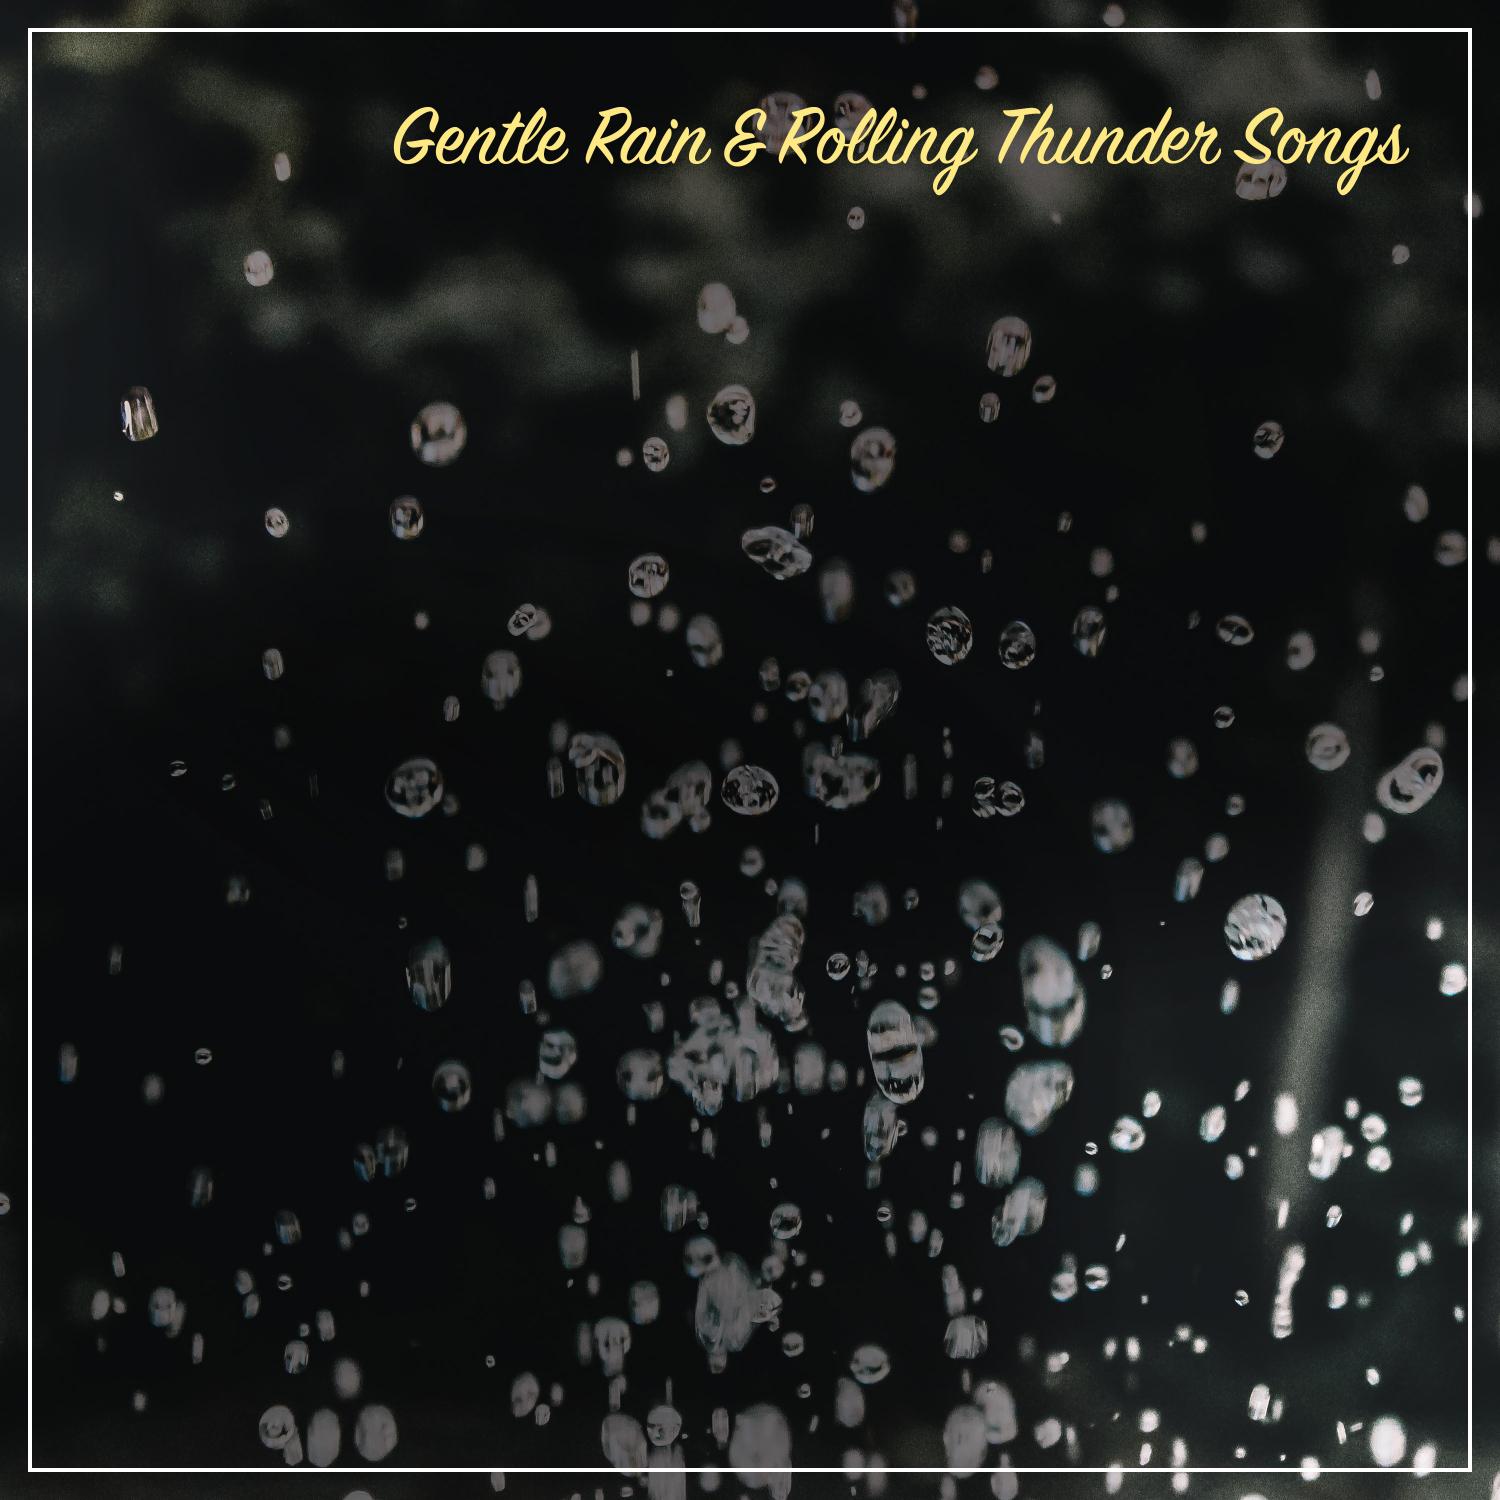 19 Gentle Rain & Rolling Thunder Songs for Background White Noise